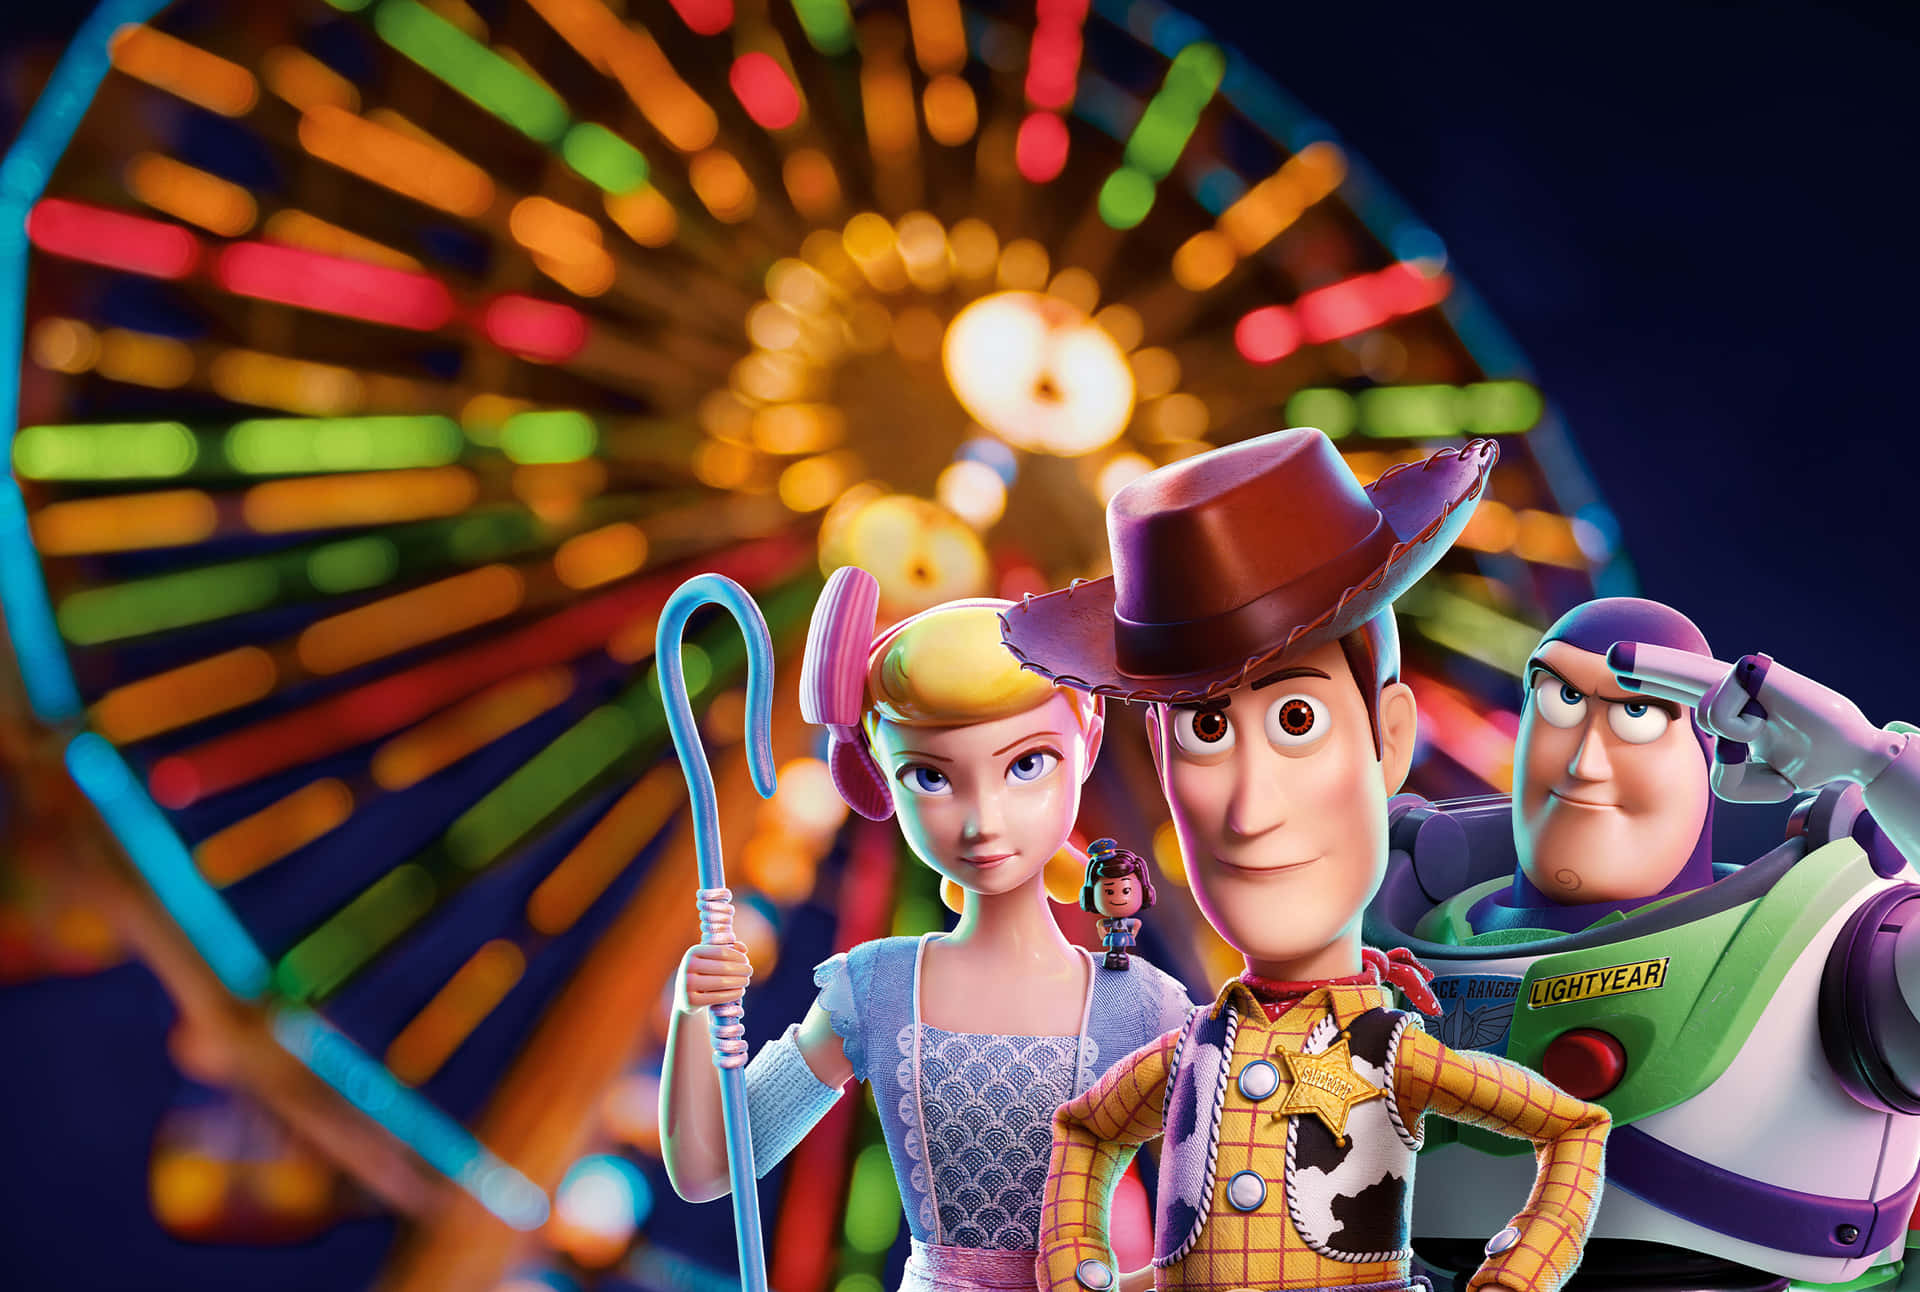 Kommund Begleite Woody Und Seine Freunde Auf Ein Neues Abenteuer In Toy Story 4!